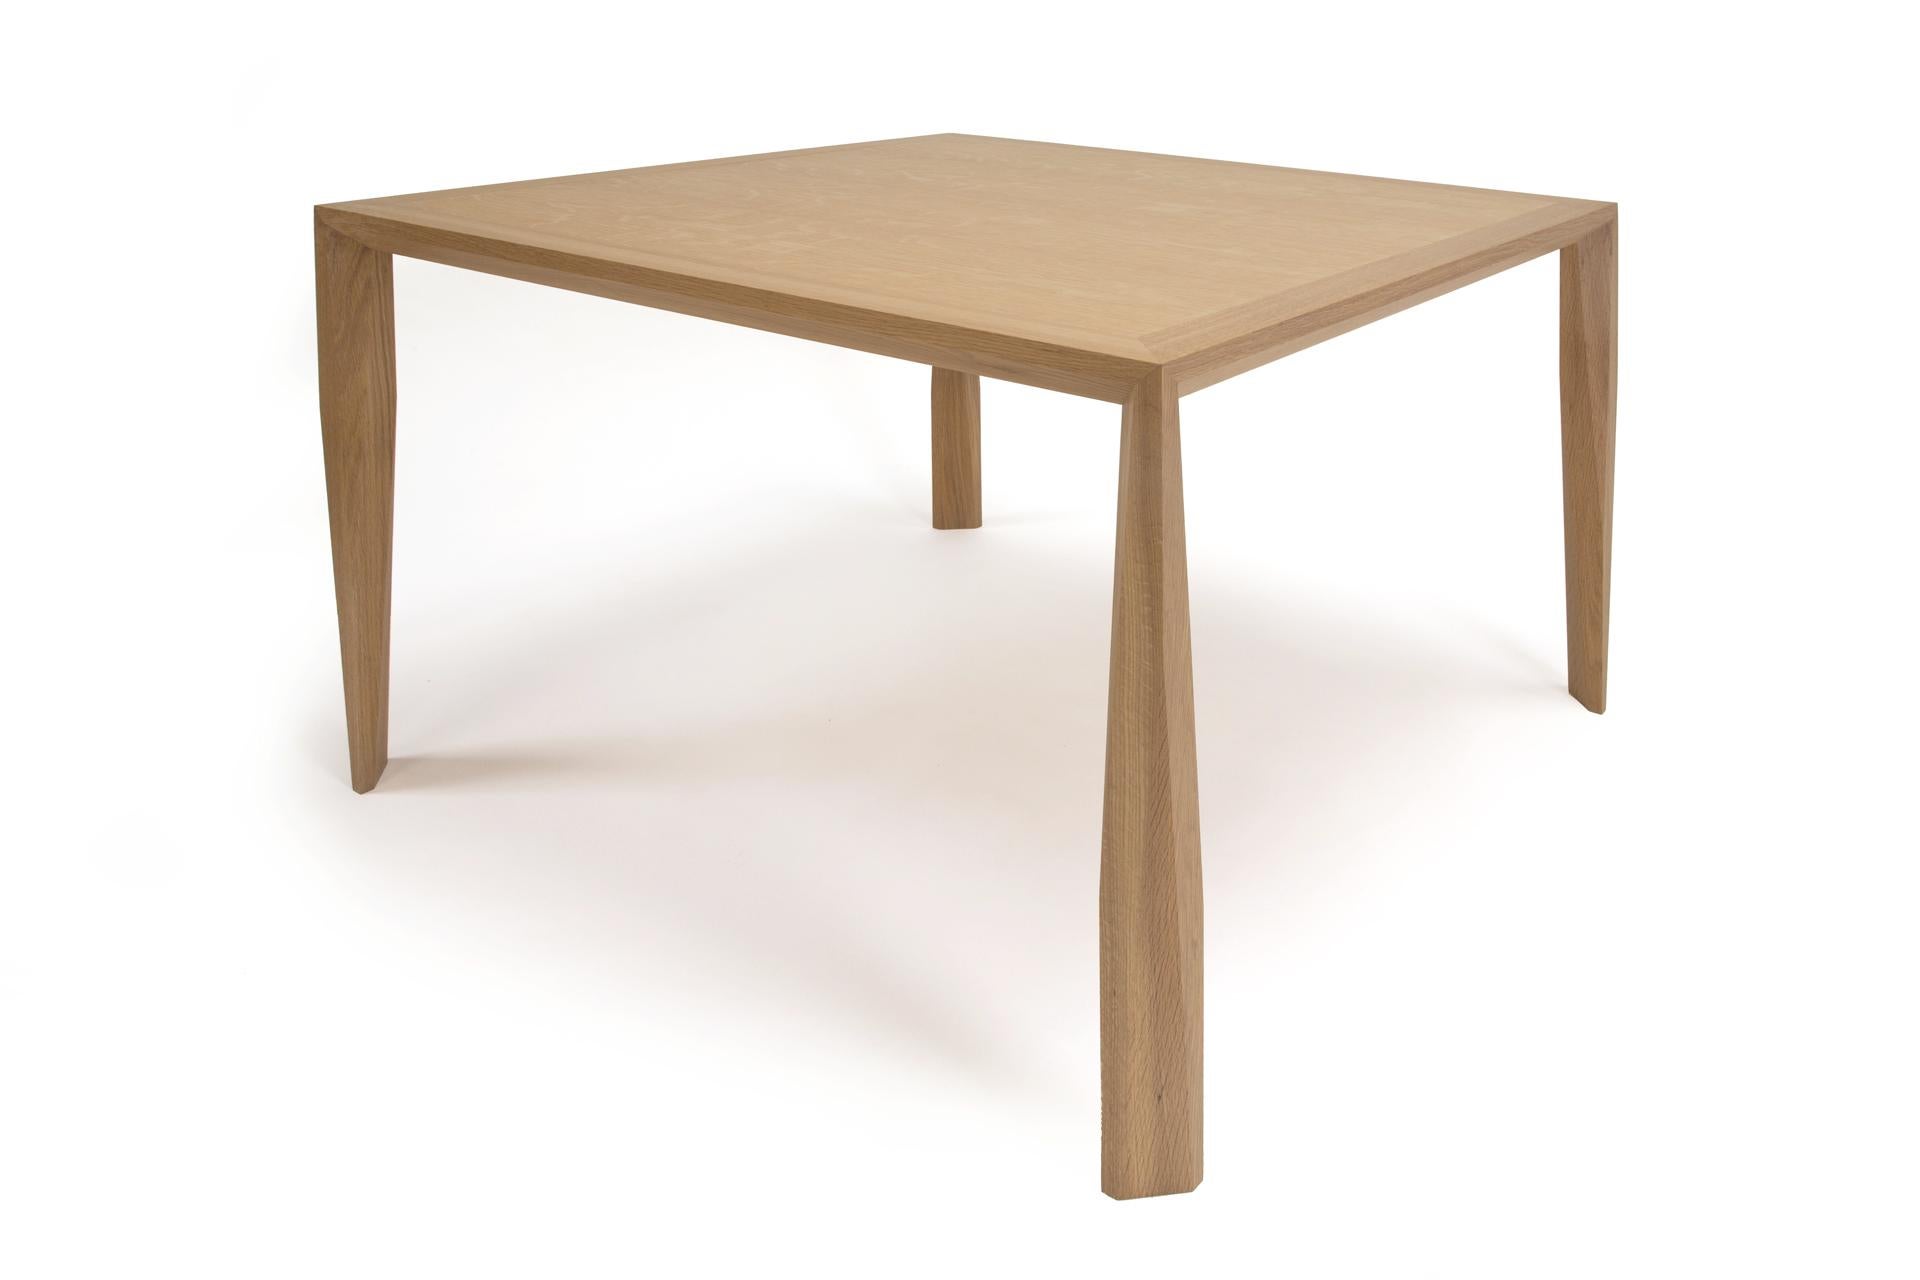 Cette table de notre nouvelle série de tables de salle à manger/console s'appelle la table 